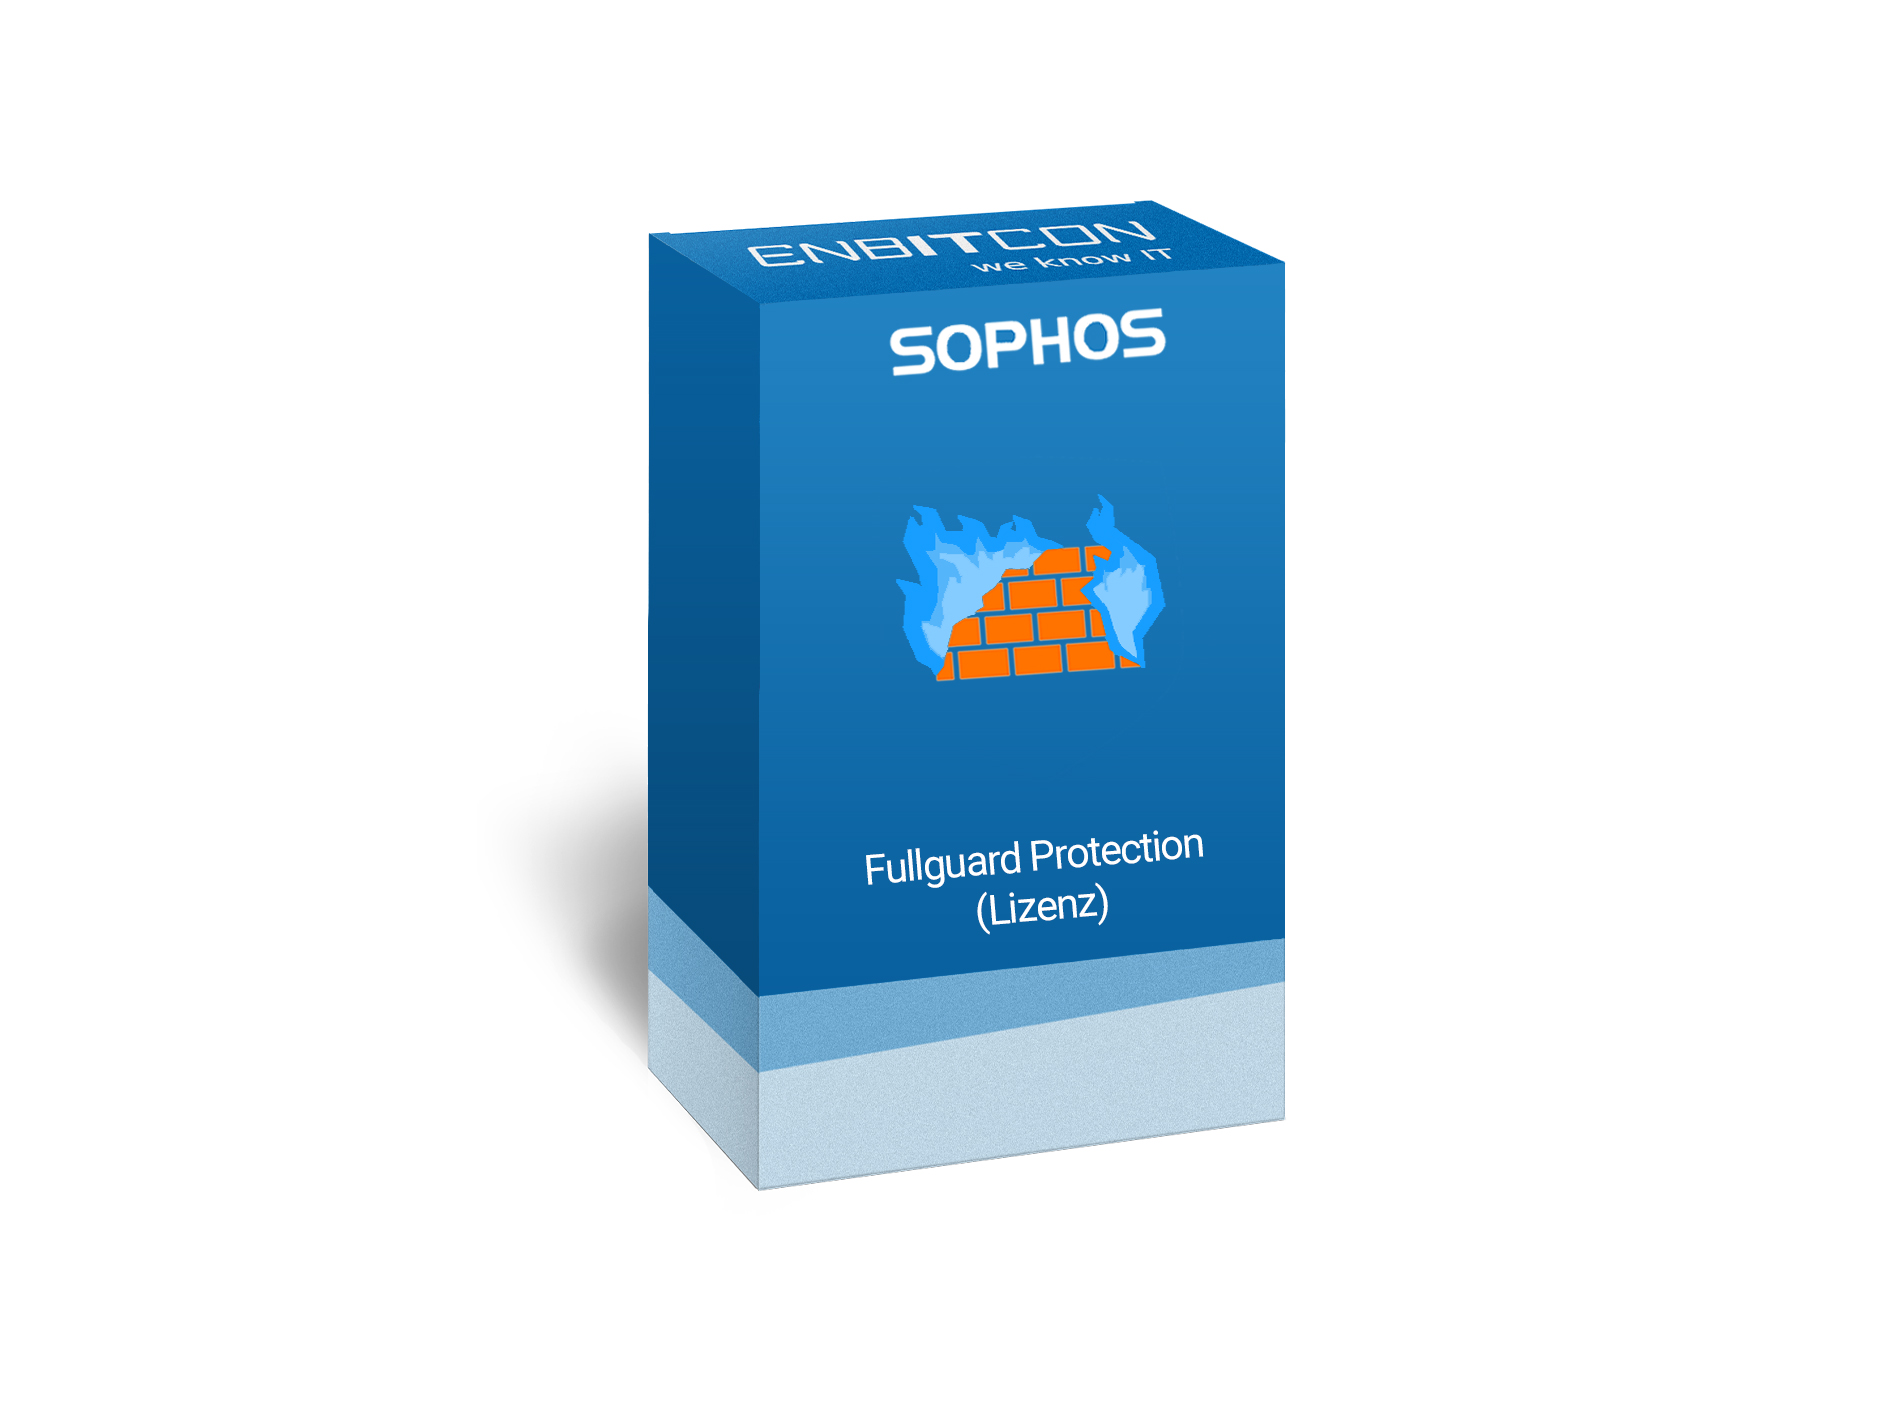 Sophos Full Guard Bundle Vorschaubild bestehend aus einem blauen Schild, indem sich eine orangene  Mauer mit blauen Flammen befinden